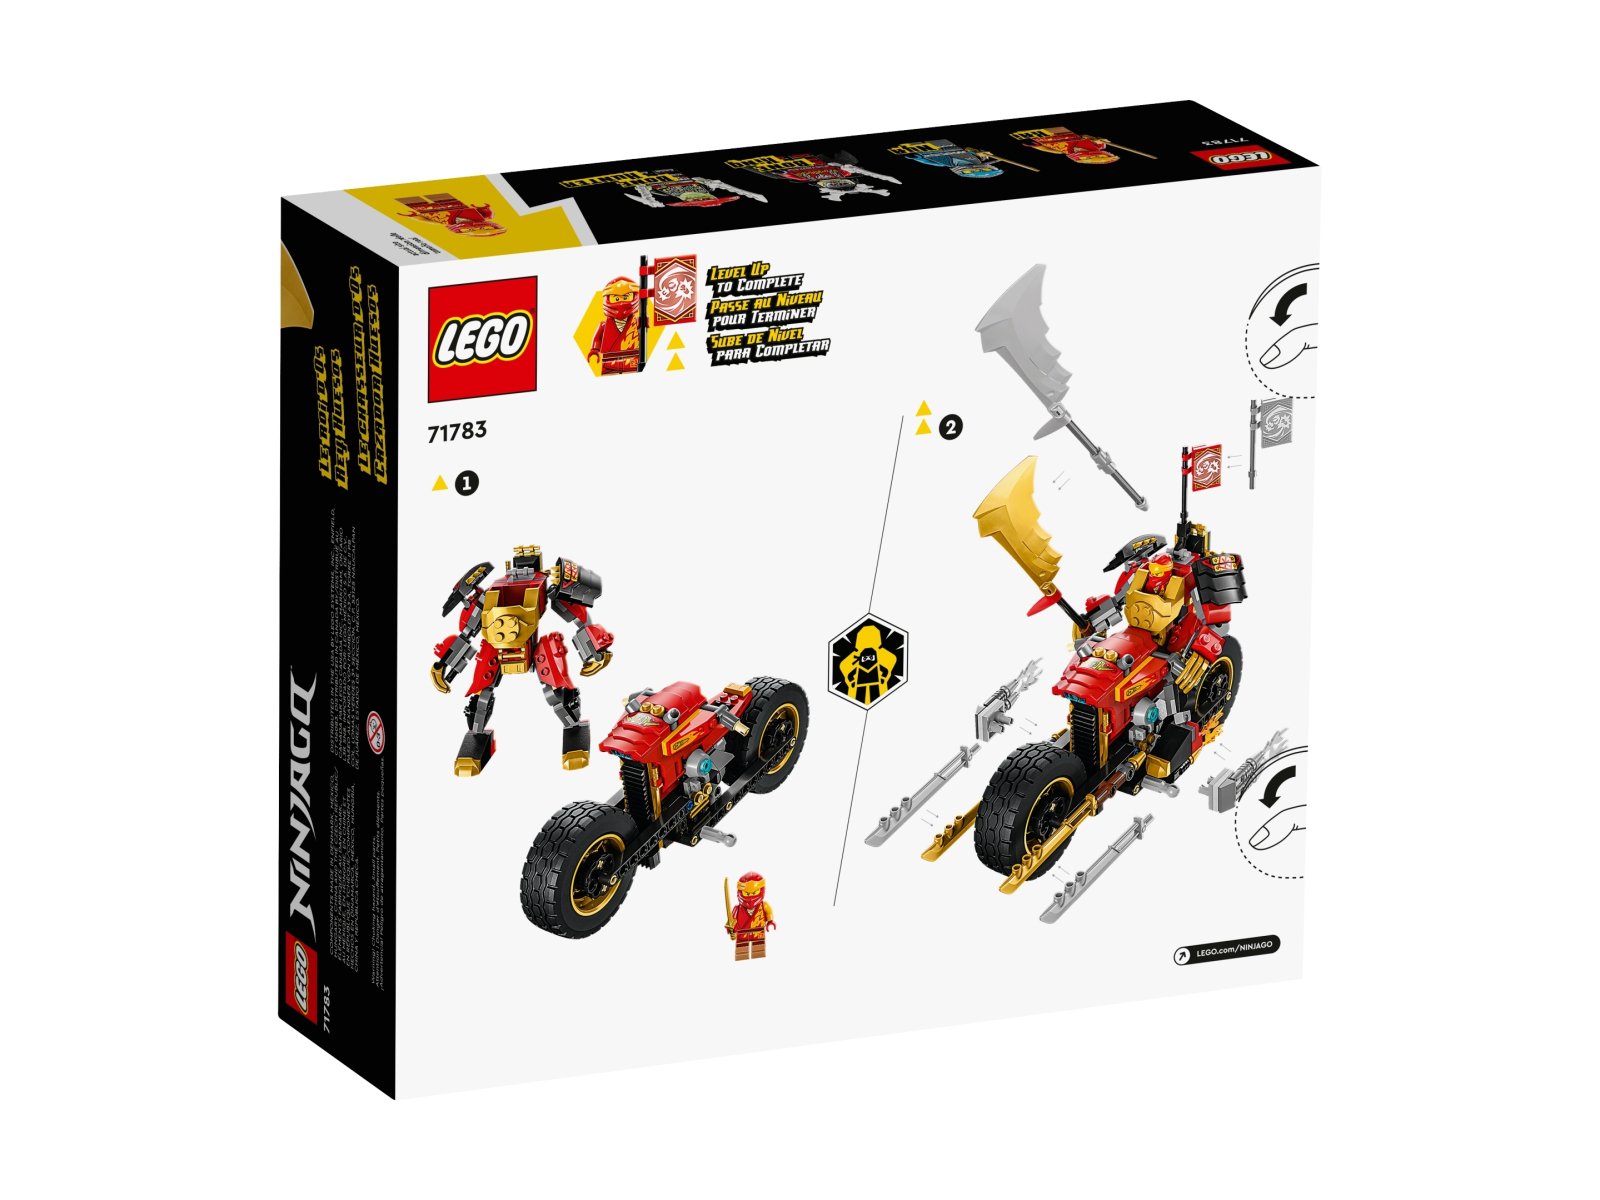 LEGO 71783 Ninjago Jeździec-Mech Kaia EVO